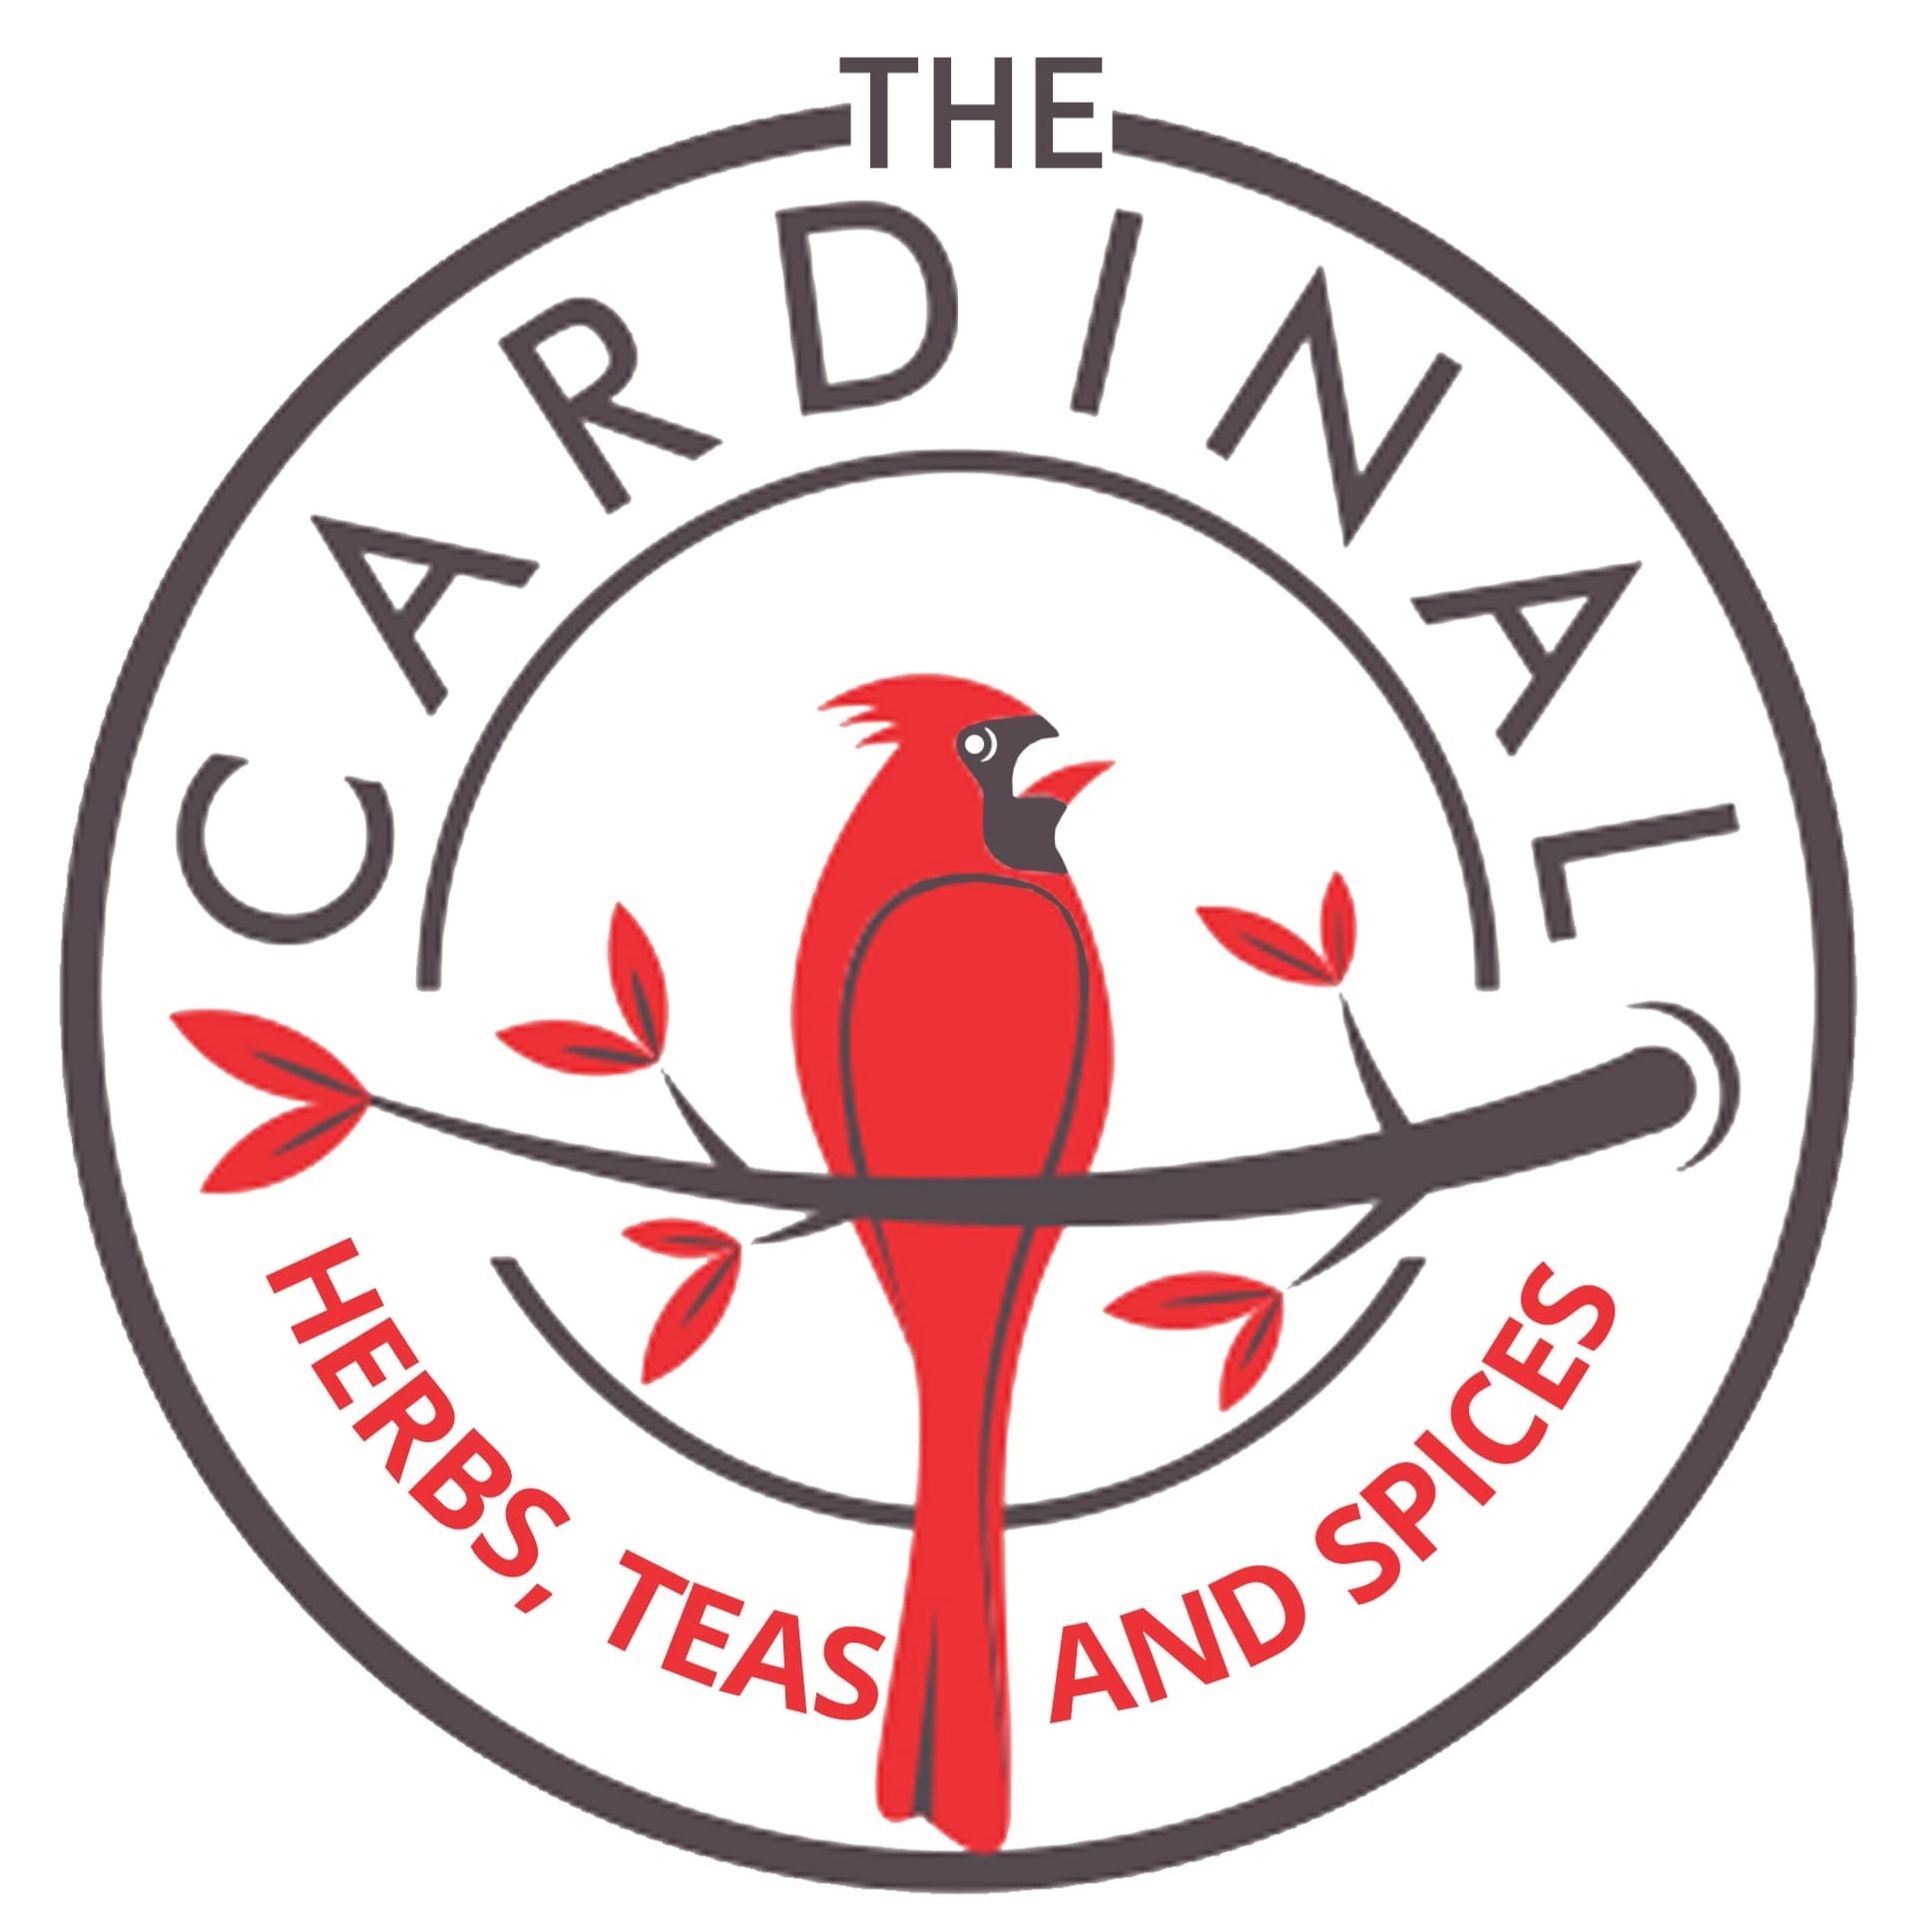 cardinal herbs, teas and spices